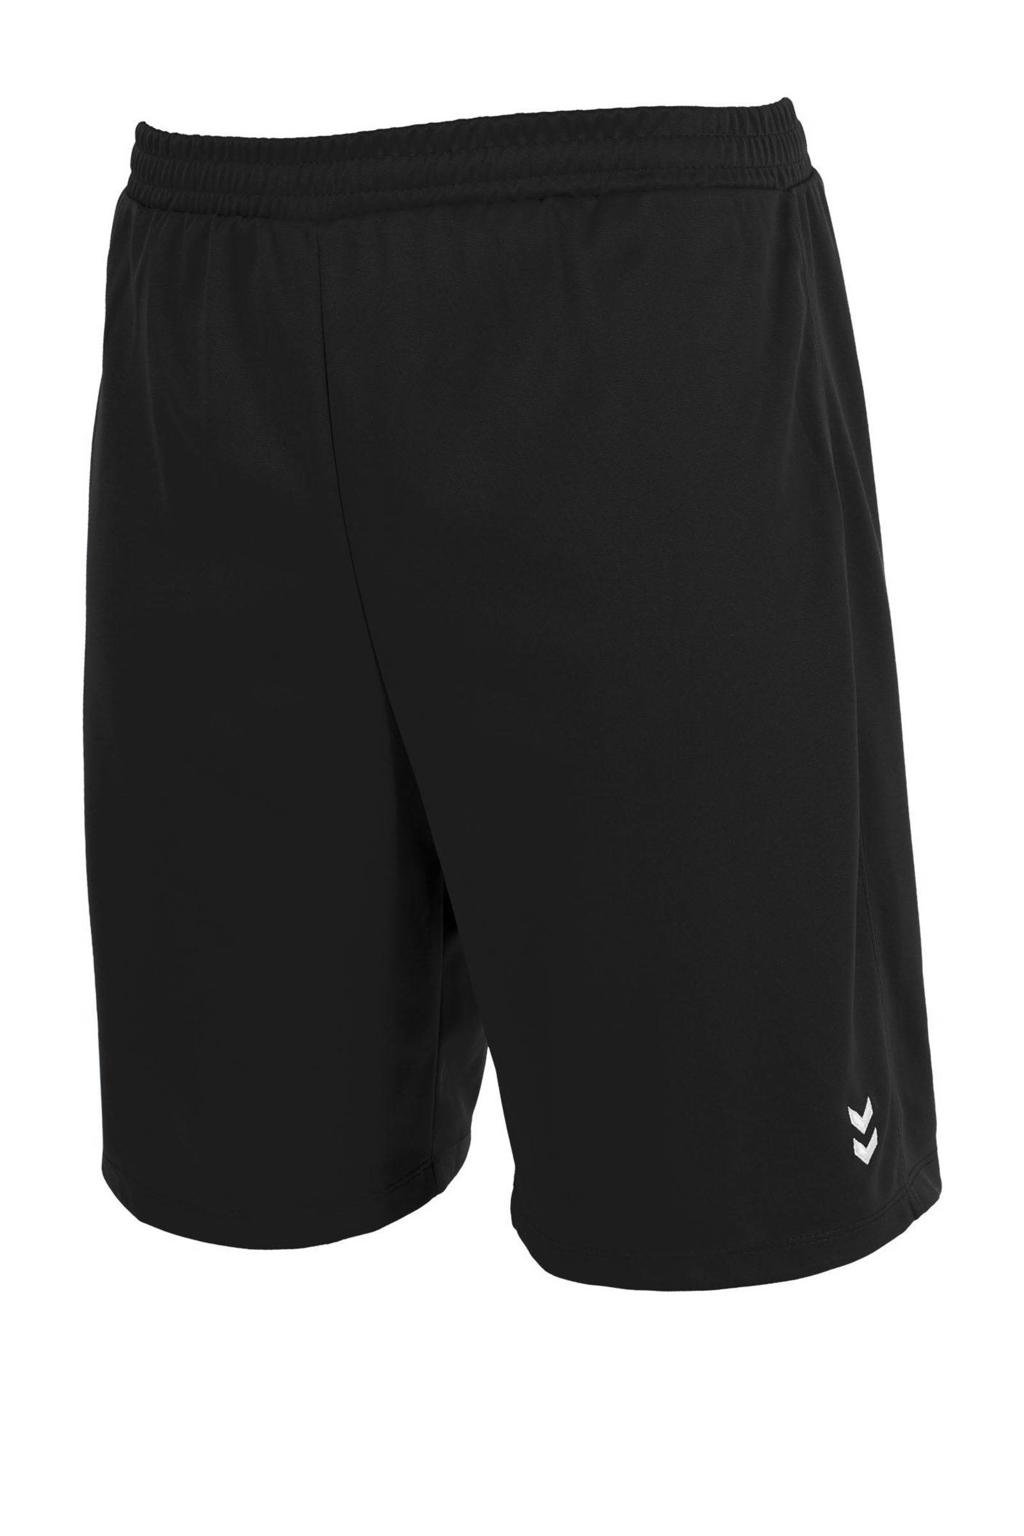 Zwarte heren hummel voetbalshort Euro van polyester met regular fit en elastische tailleband met koord